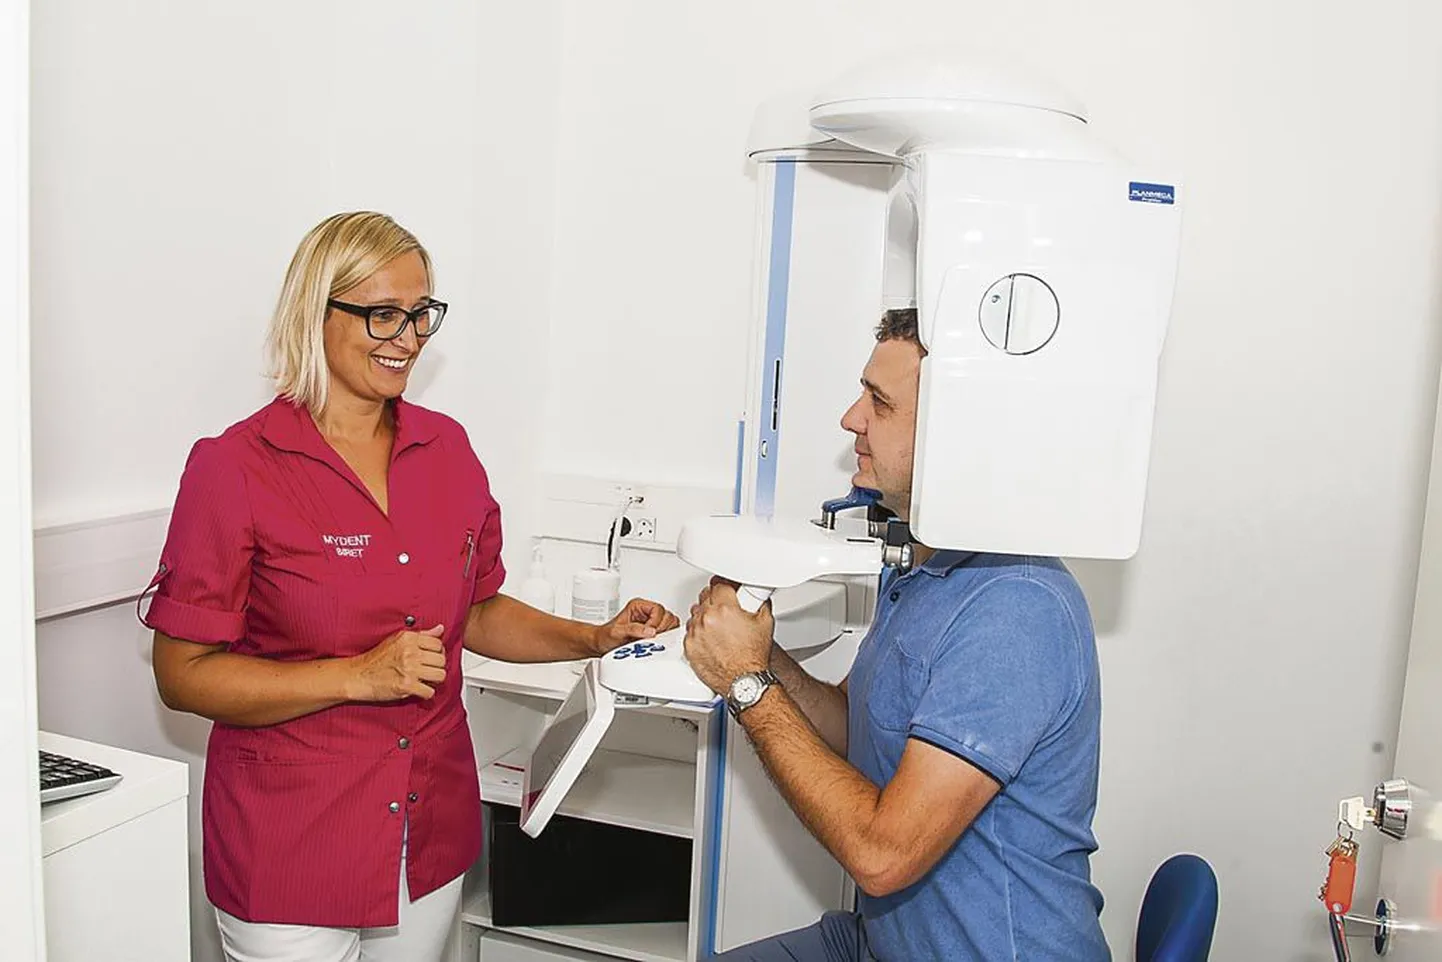 Vastse kliiniku 3D-röntgenisse saavad patsiente suunata kõik Pärnu hambaravikliinikud. Röntgenipildi tegemine uue tehnika abil on inimese jaoks lihtne ja mugav, tutvustas assistent Siret Reidla.